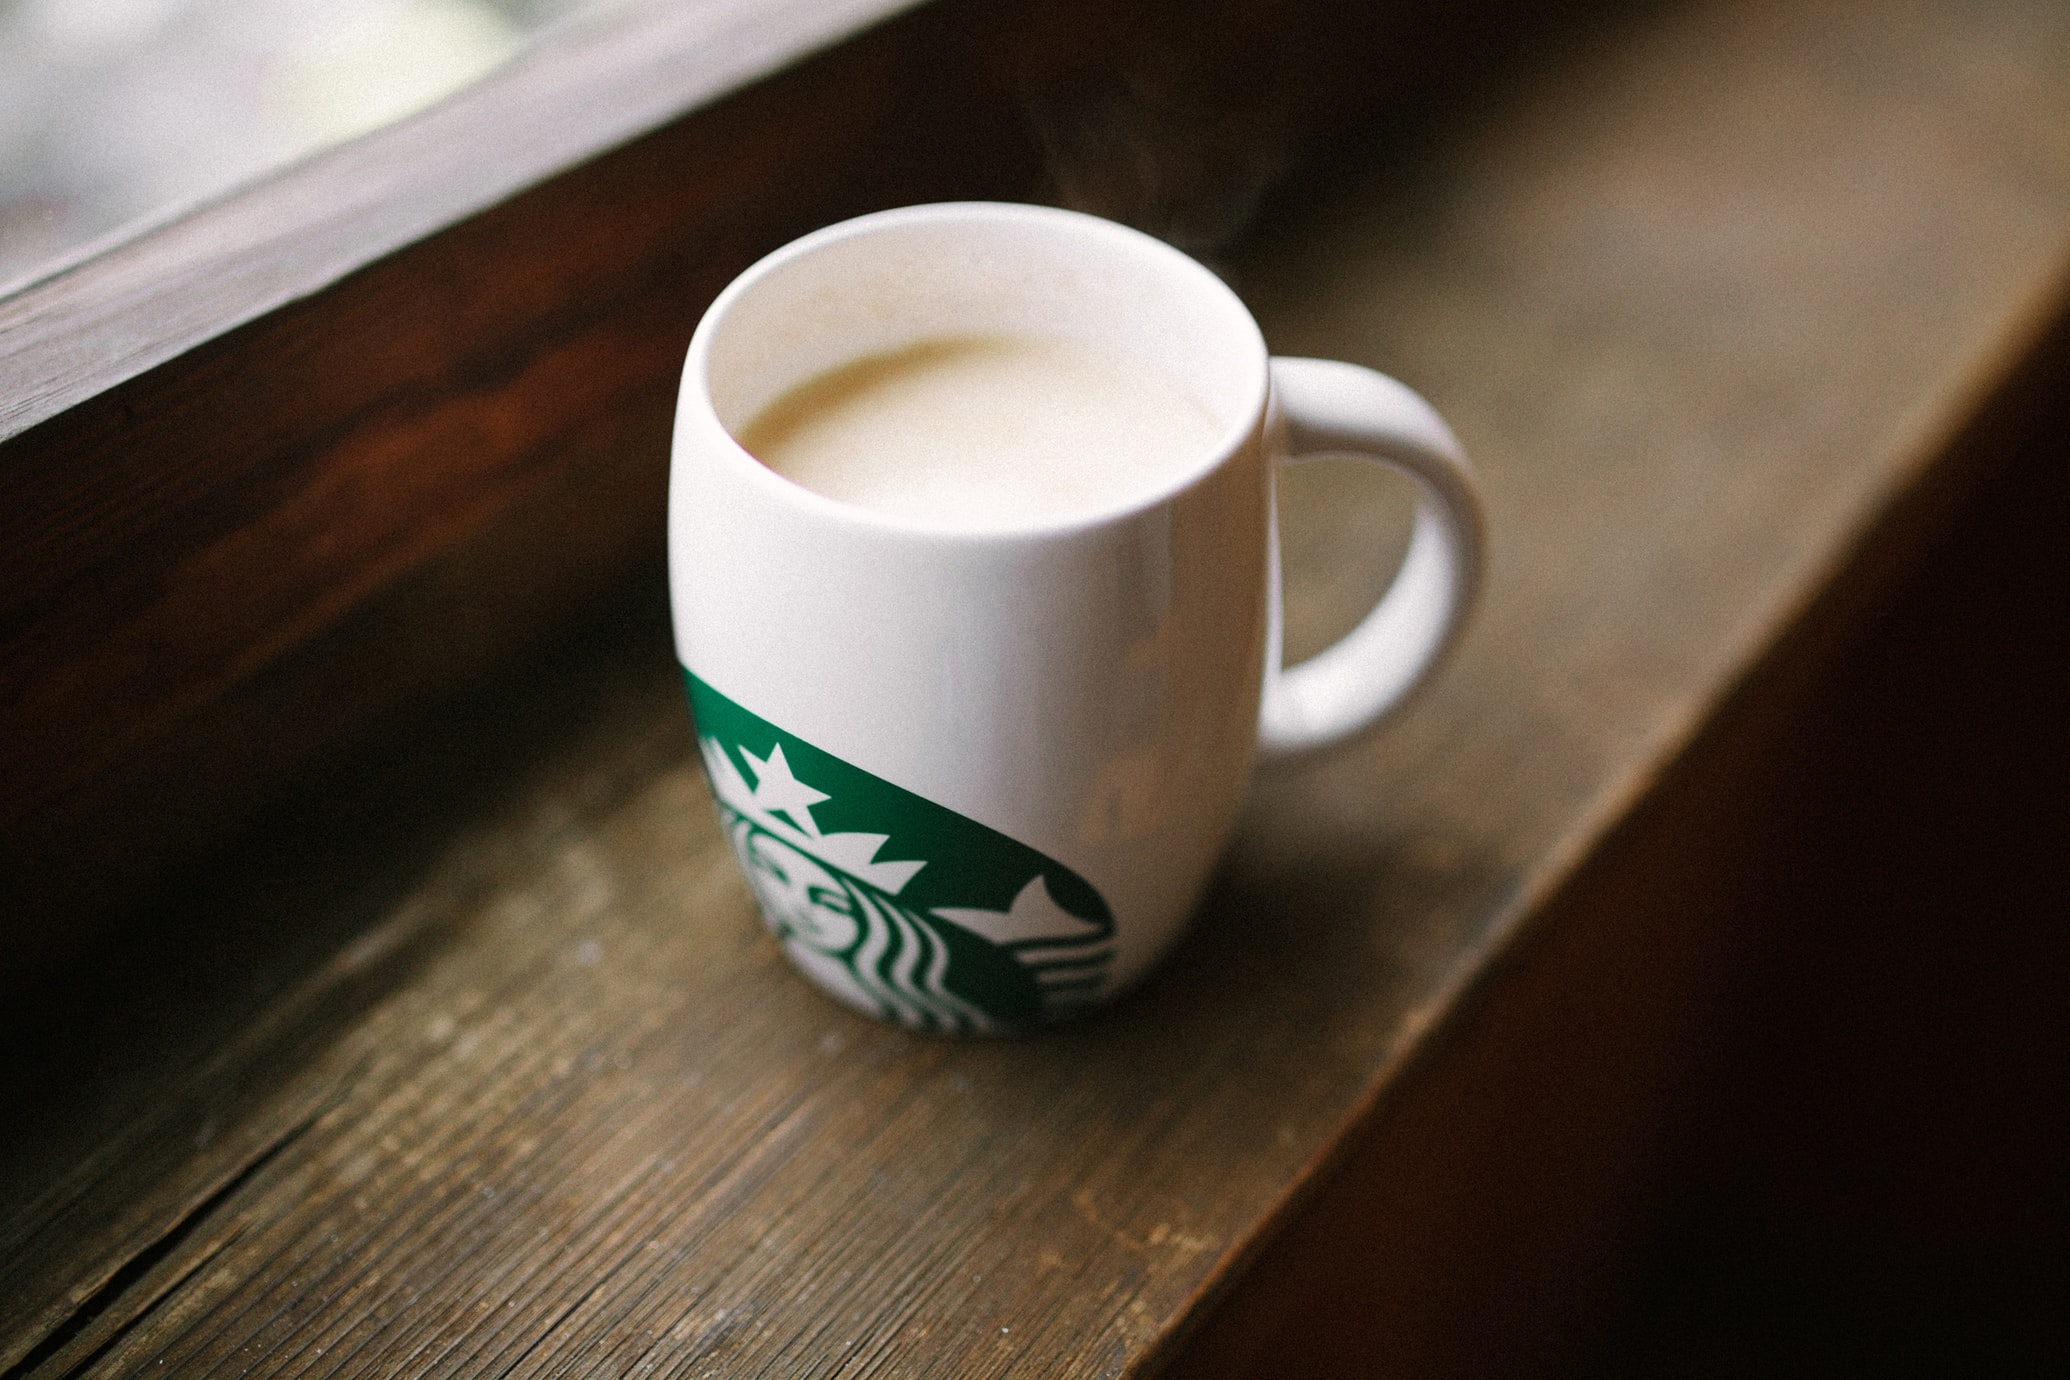 Bebidas artesanales de Starbucks: 11 delicias tentadoras